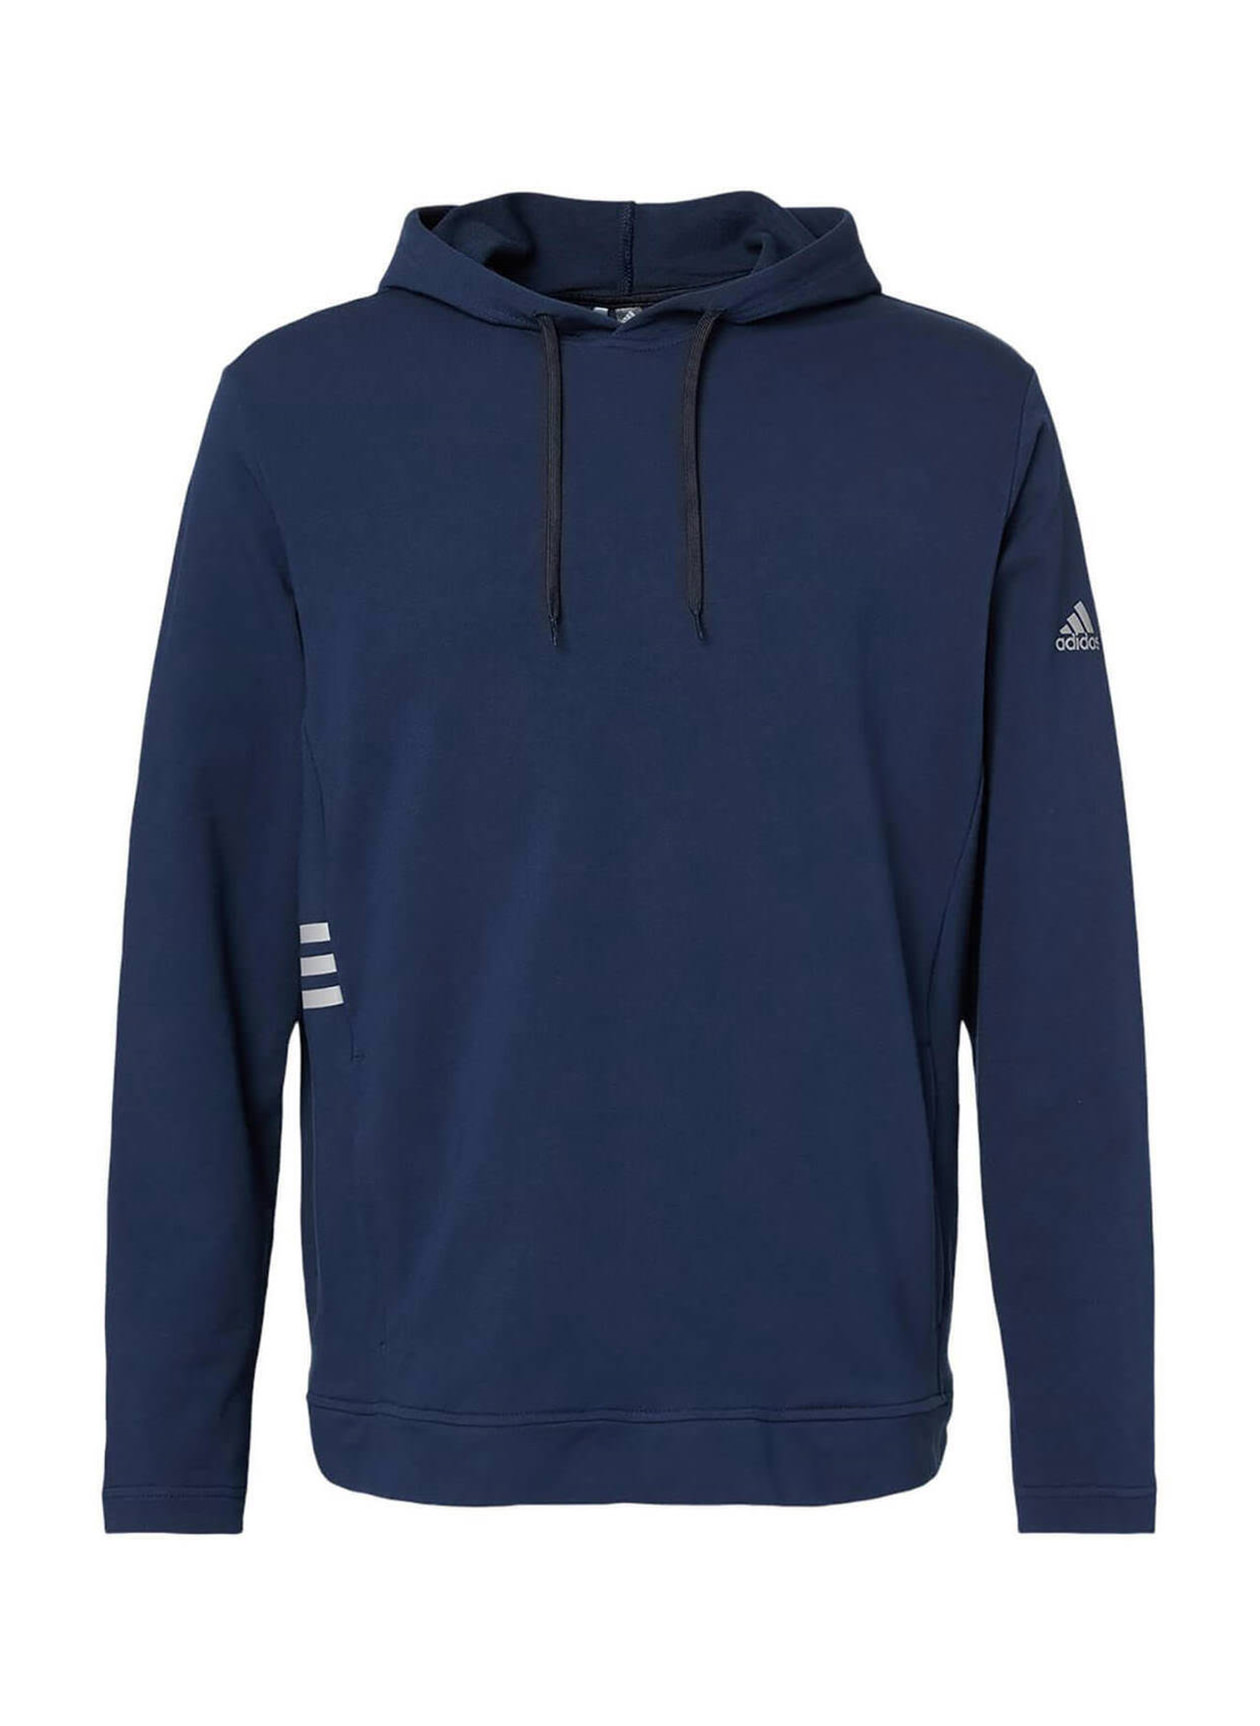 Robar a Insignificante Tentación Adidas Men's Lightweight Hooded Sweatshirt Collegiate Navy | Adidas